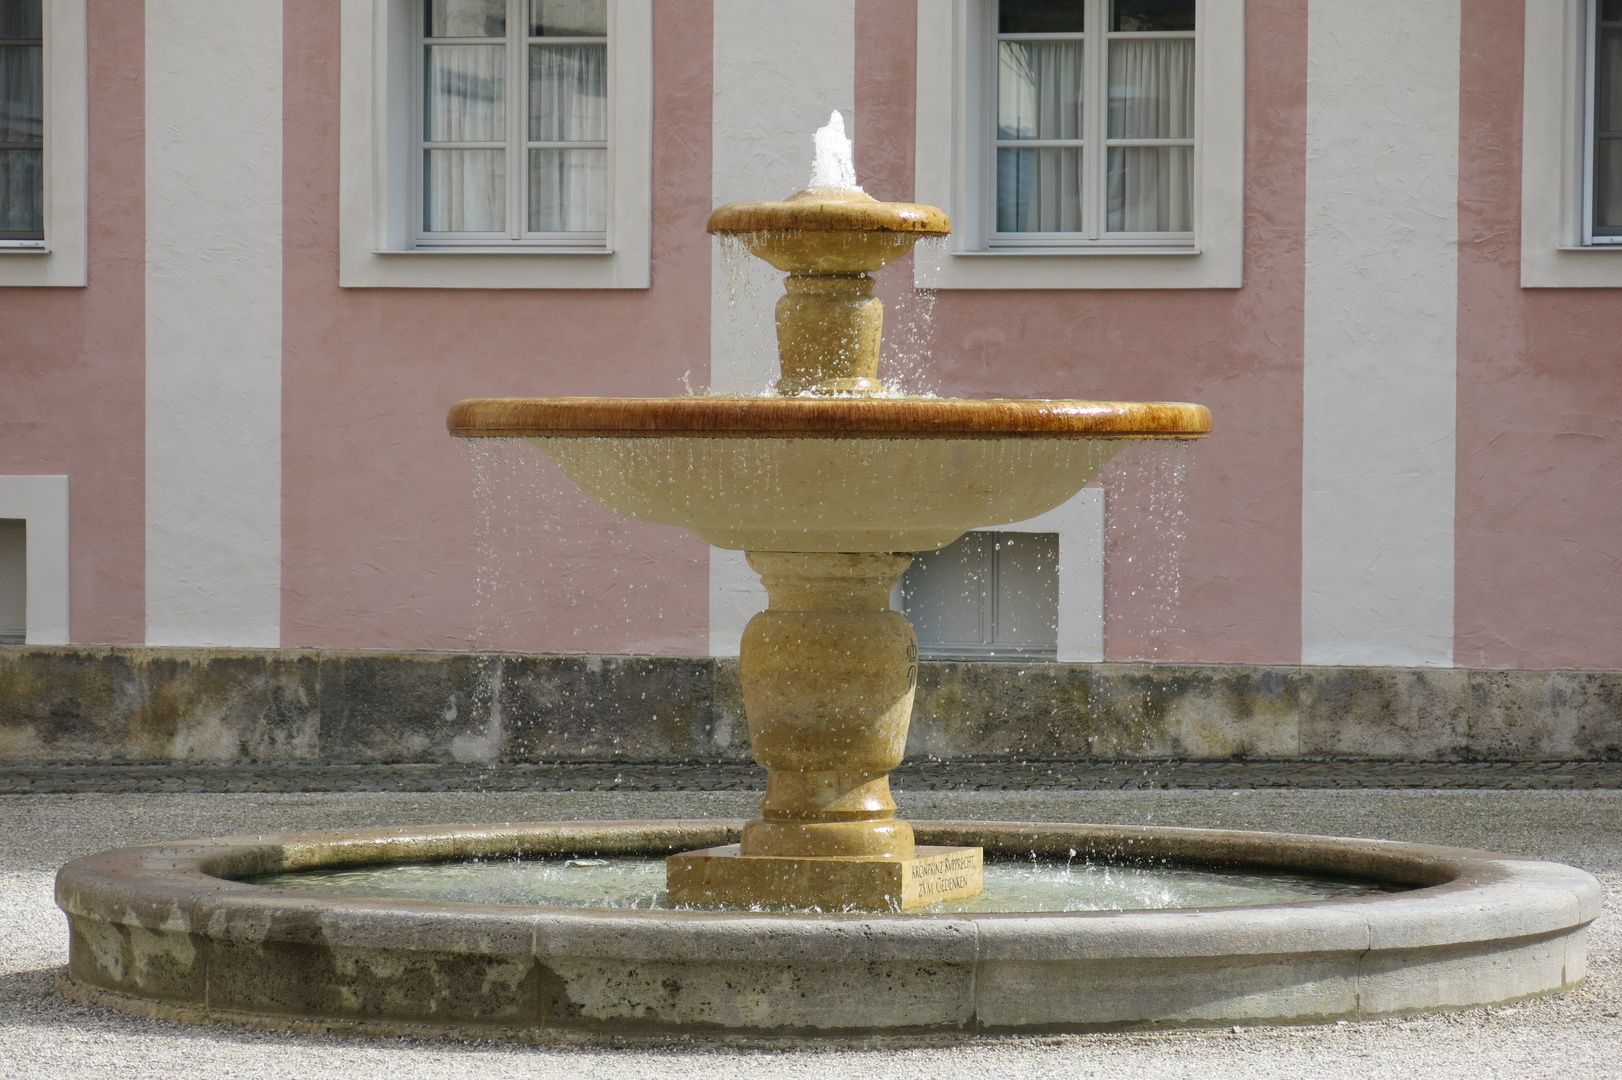 Kaskadenbrunnen in Berchtesgaden